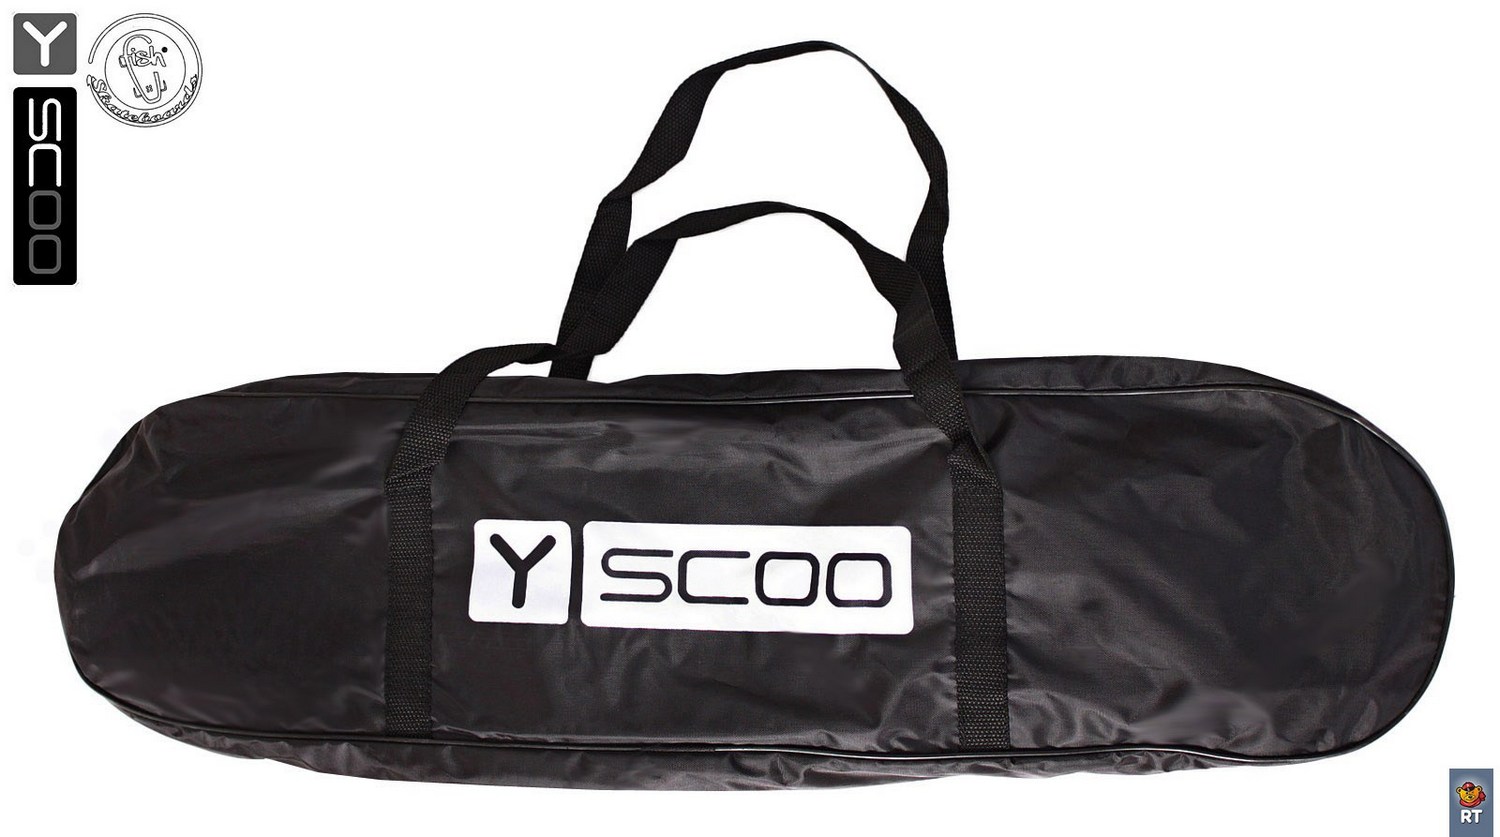 Скейтборд пластиковый Y-Scoo Longboard Shark 409-B с ручкой и сумкой, черно-оранжевый  